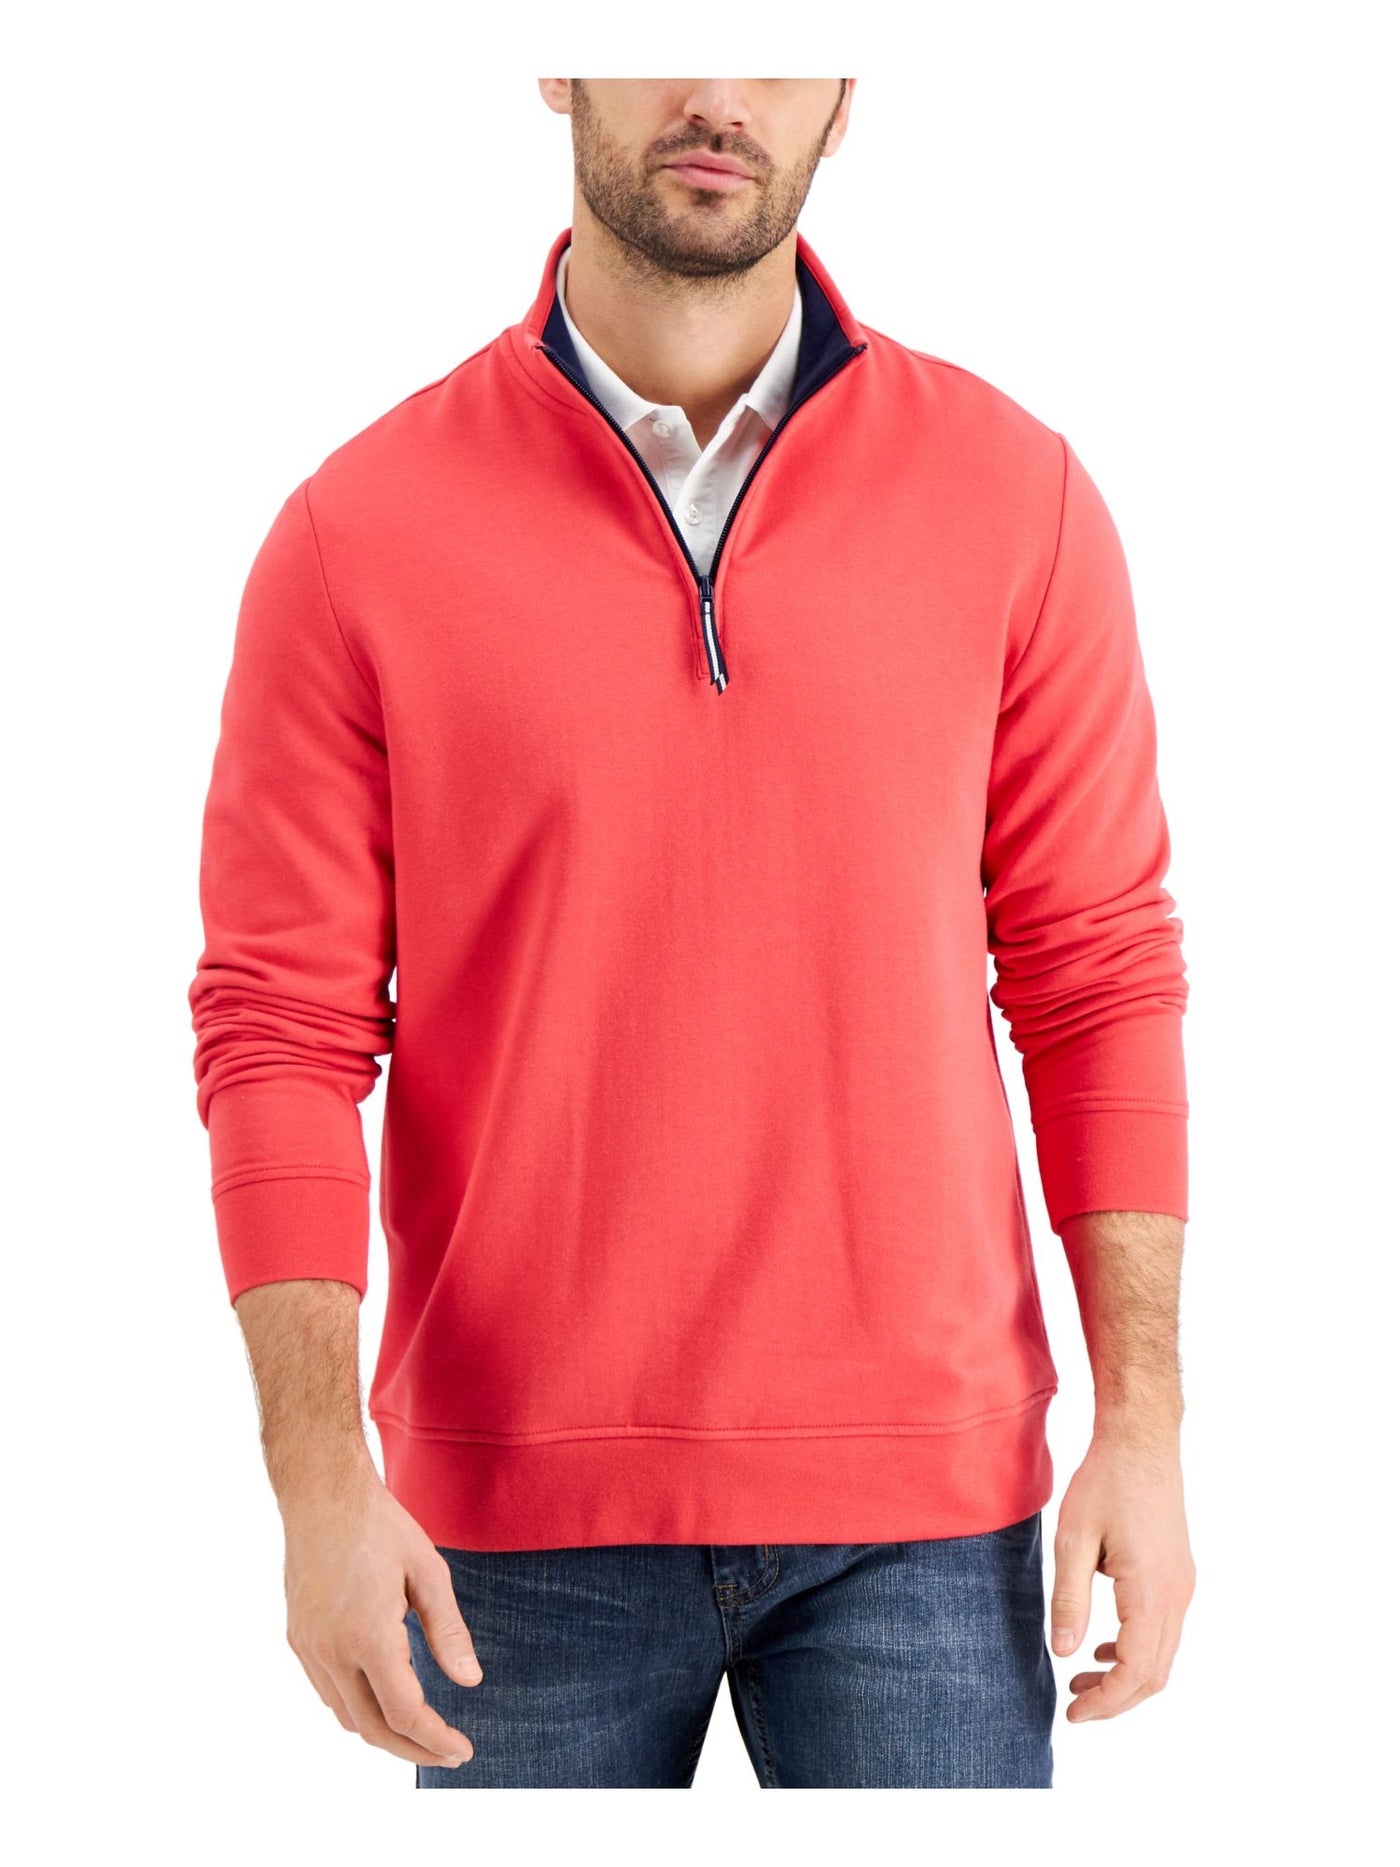 CLUBROOM Mens Red Mock Neck Classic Fit Quarter-Zip Fleece Sweatshirt S